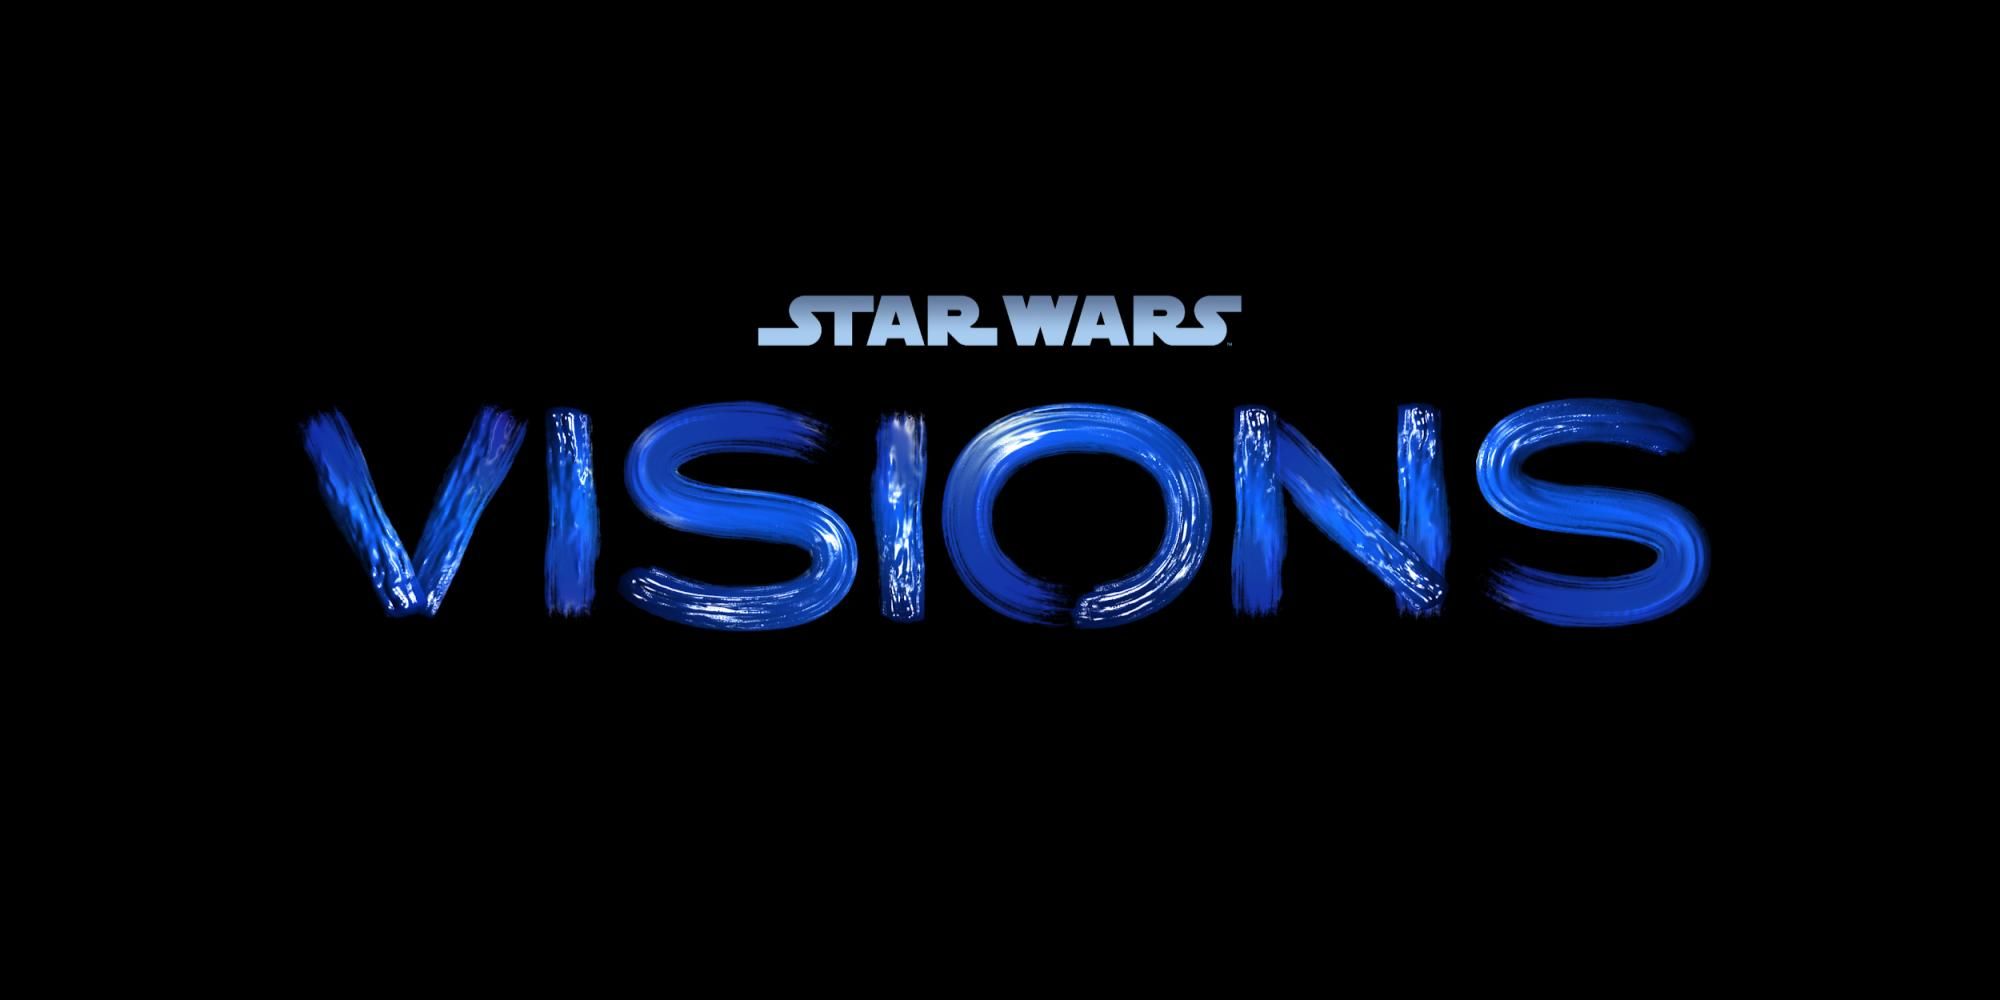 Star Wars Visions titlecard